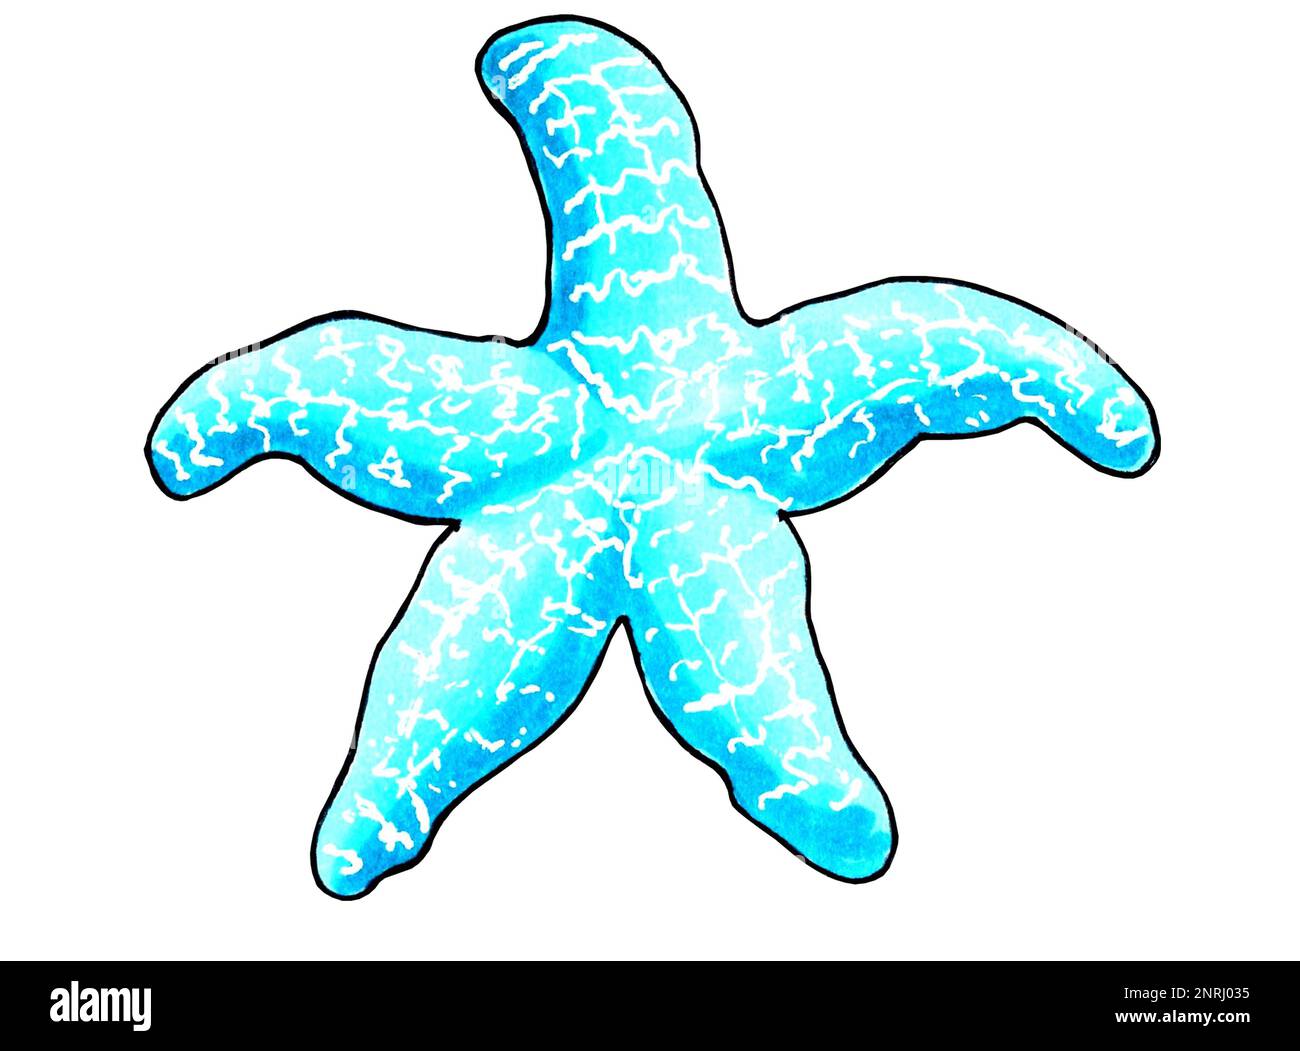 Seesterne in Aquafarbe. JPEG-Darstellung von Meerestieren. Stockfoto